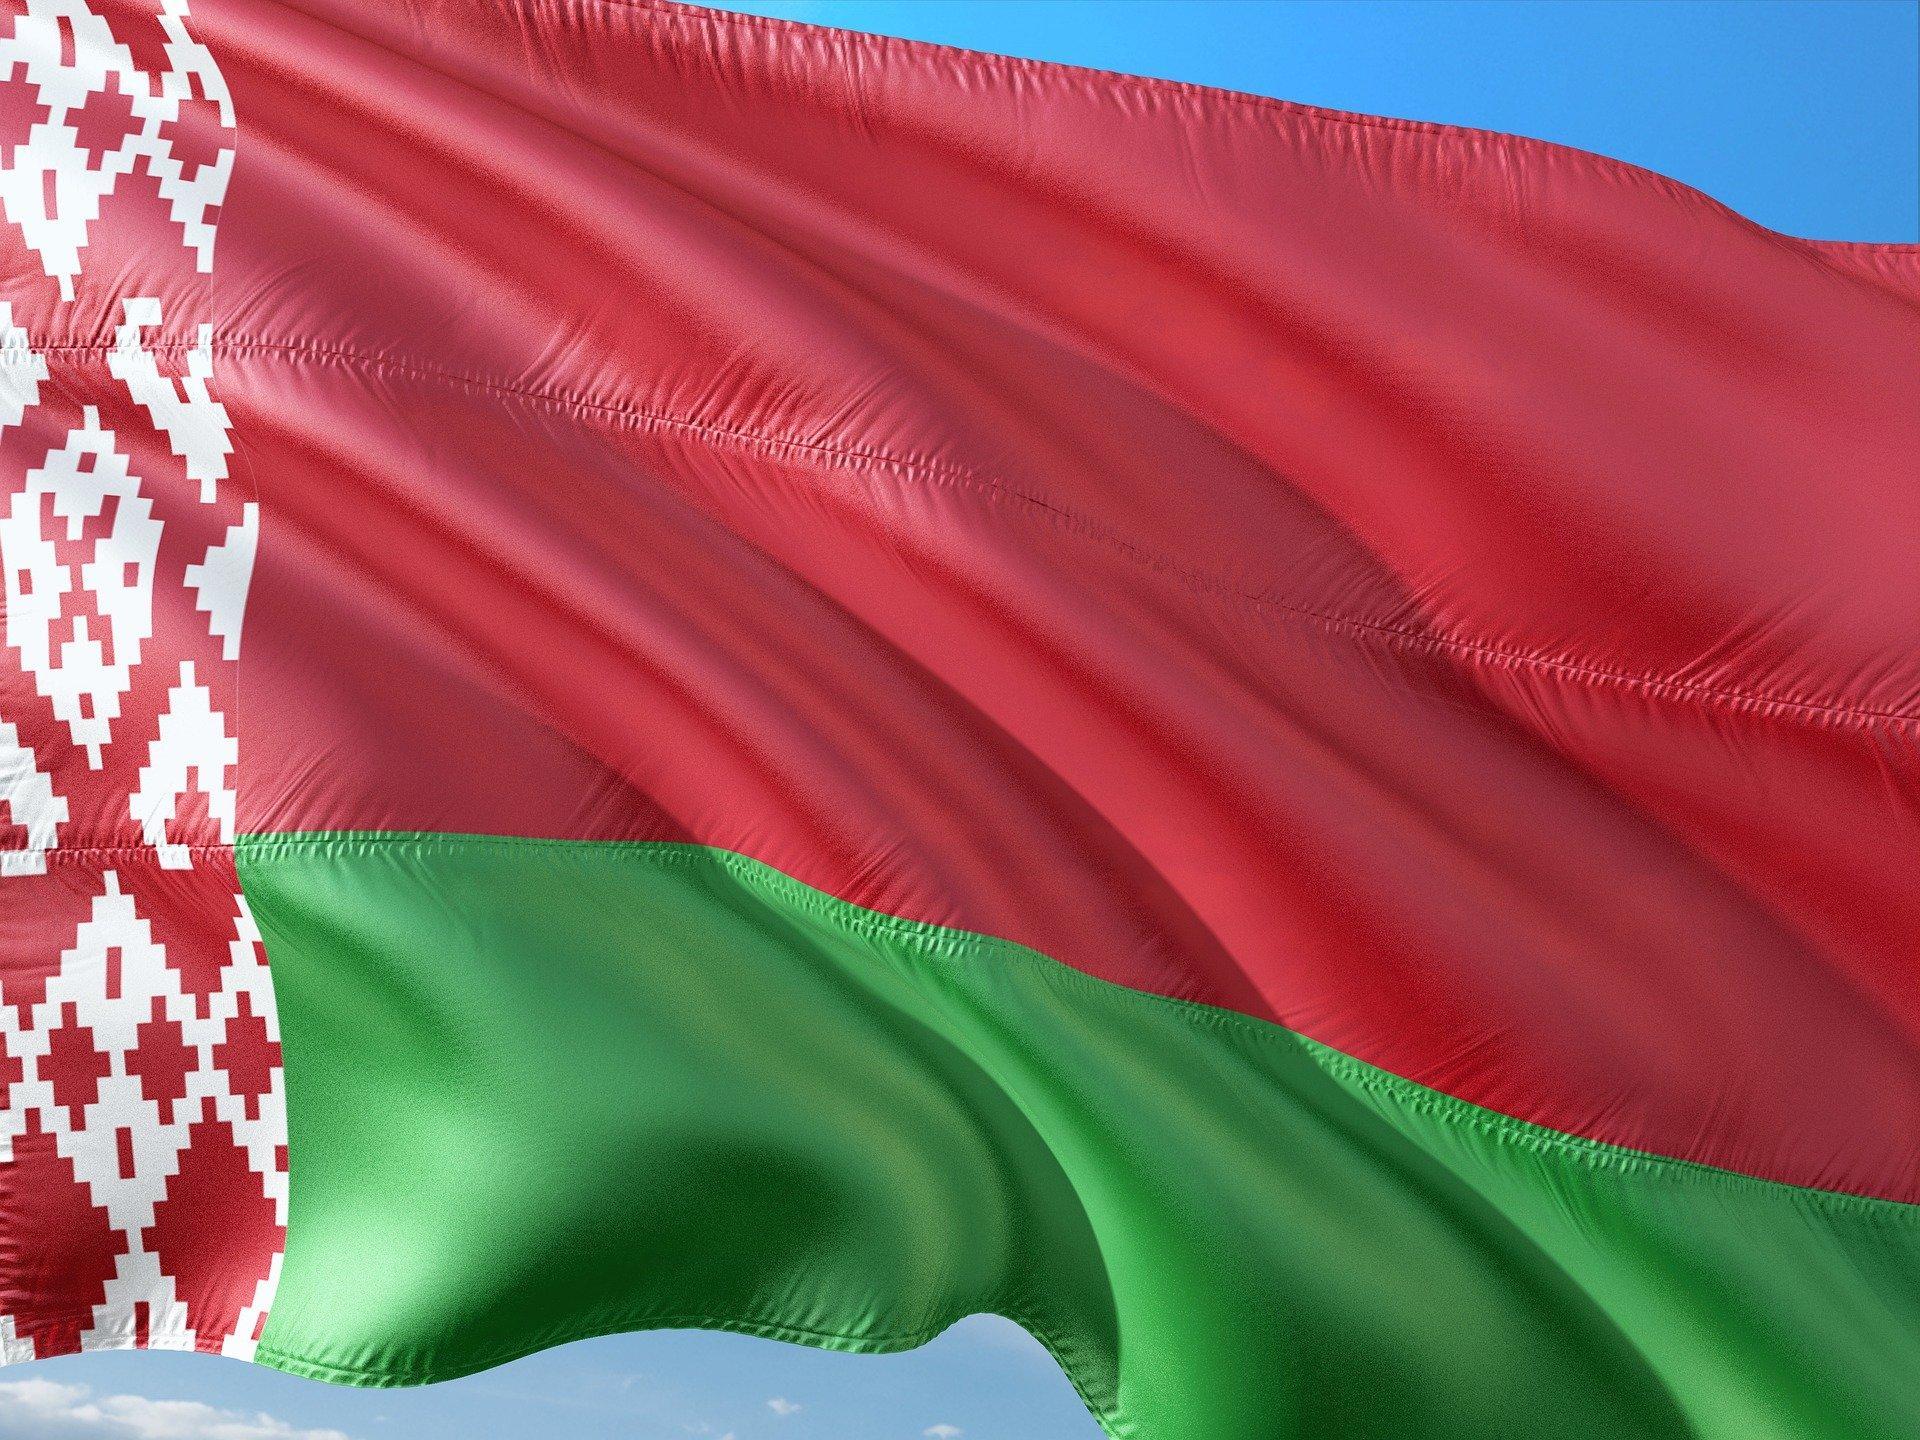 Первый лидер Белоруссии назвал флаг республики надгробным венком с орнаментом